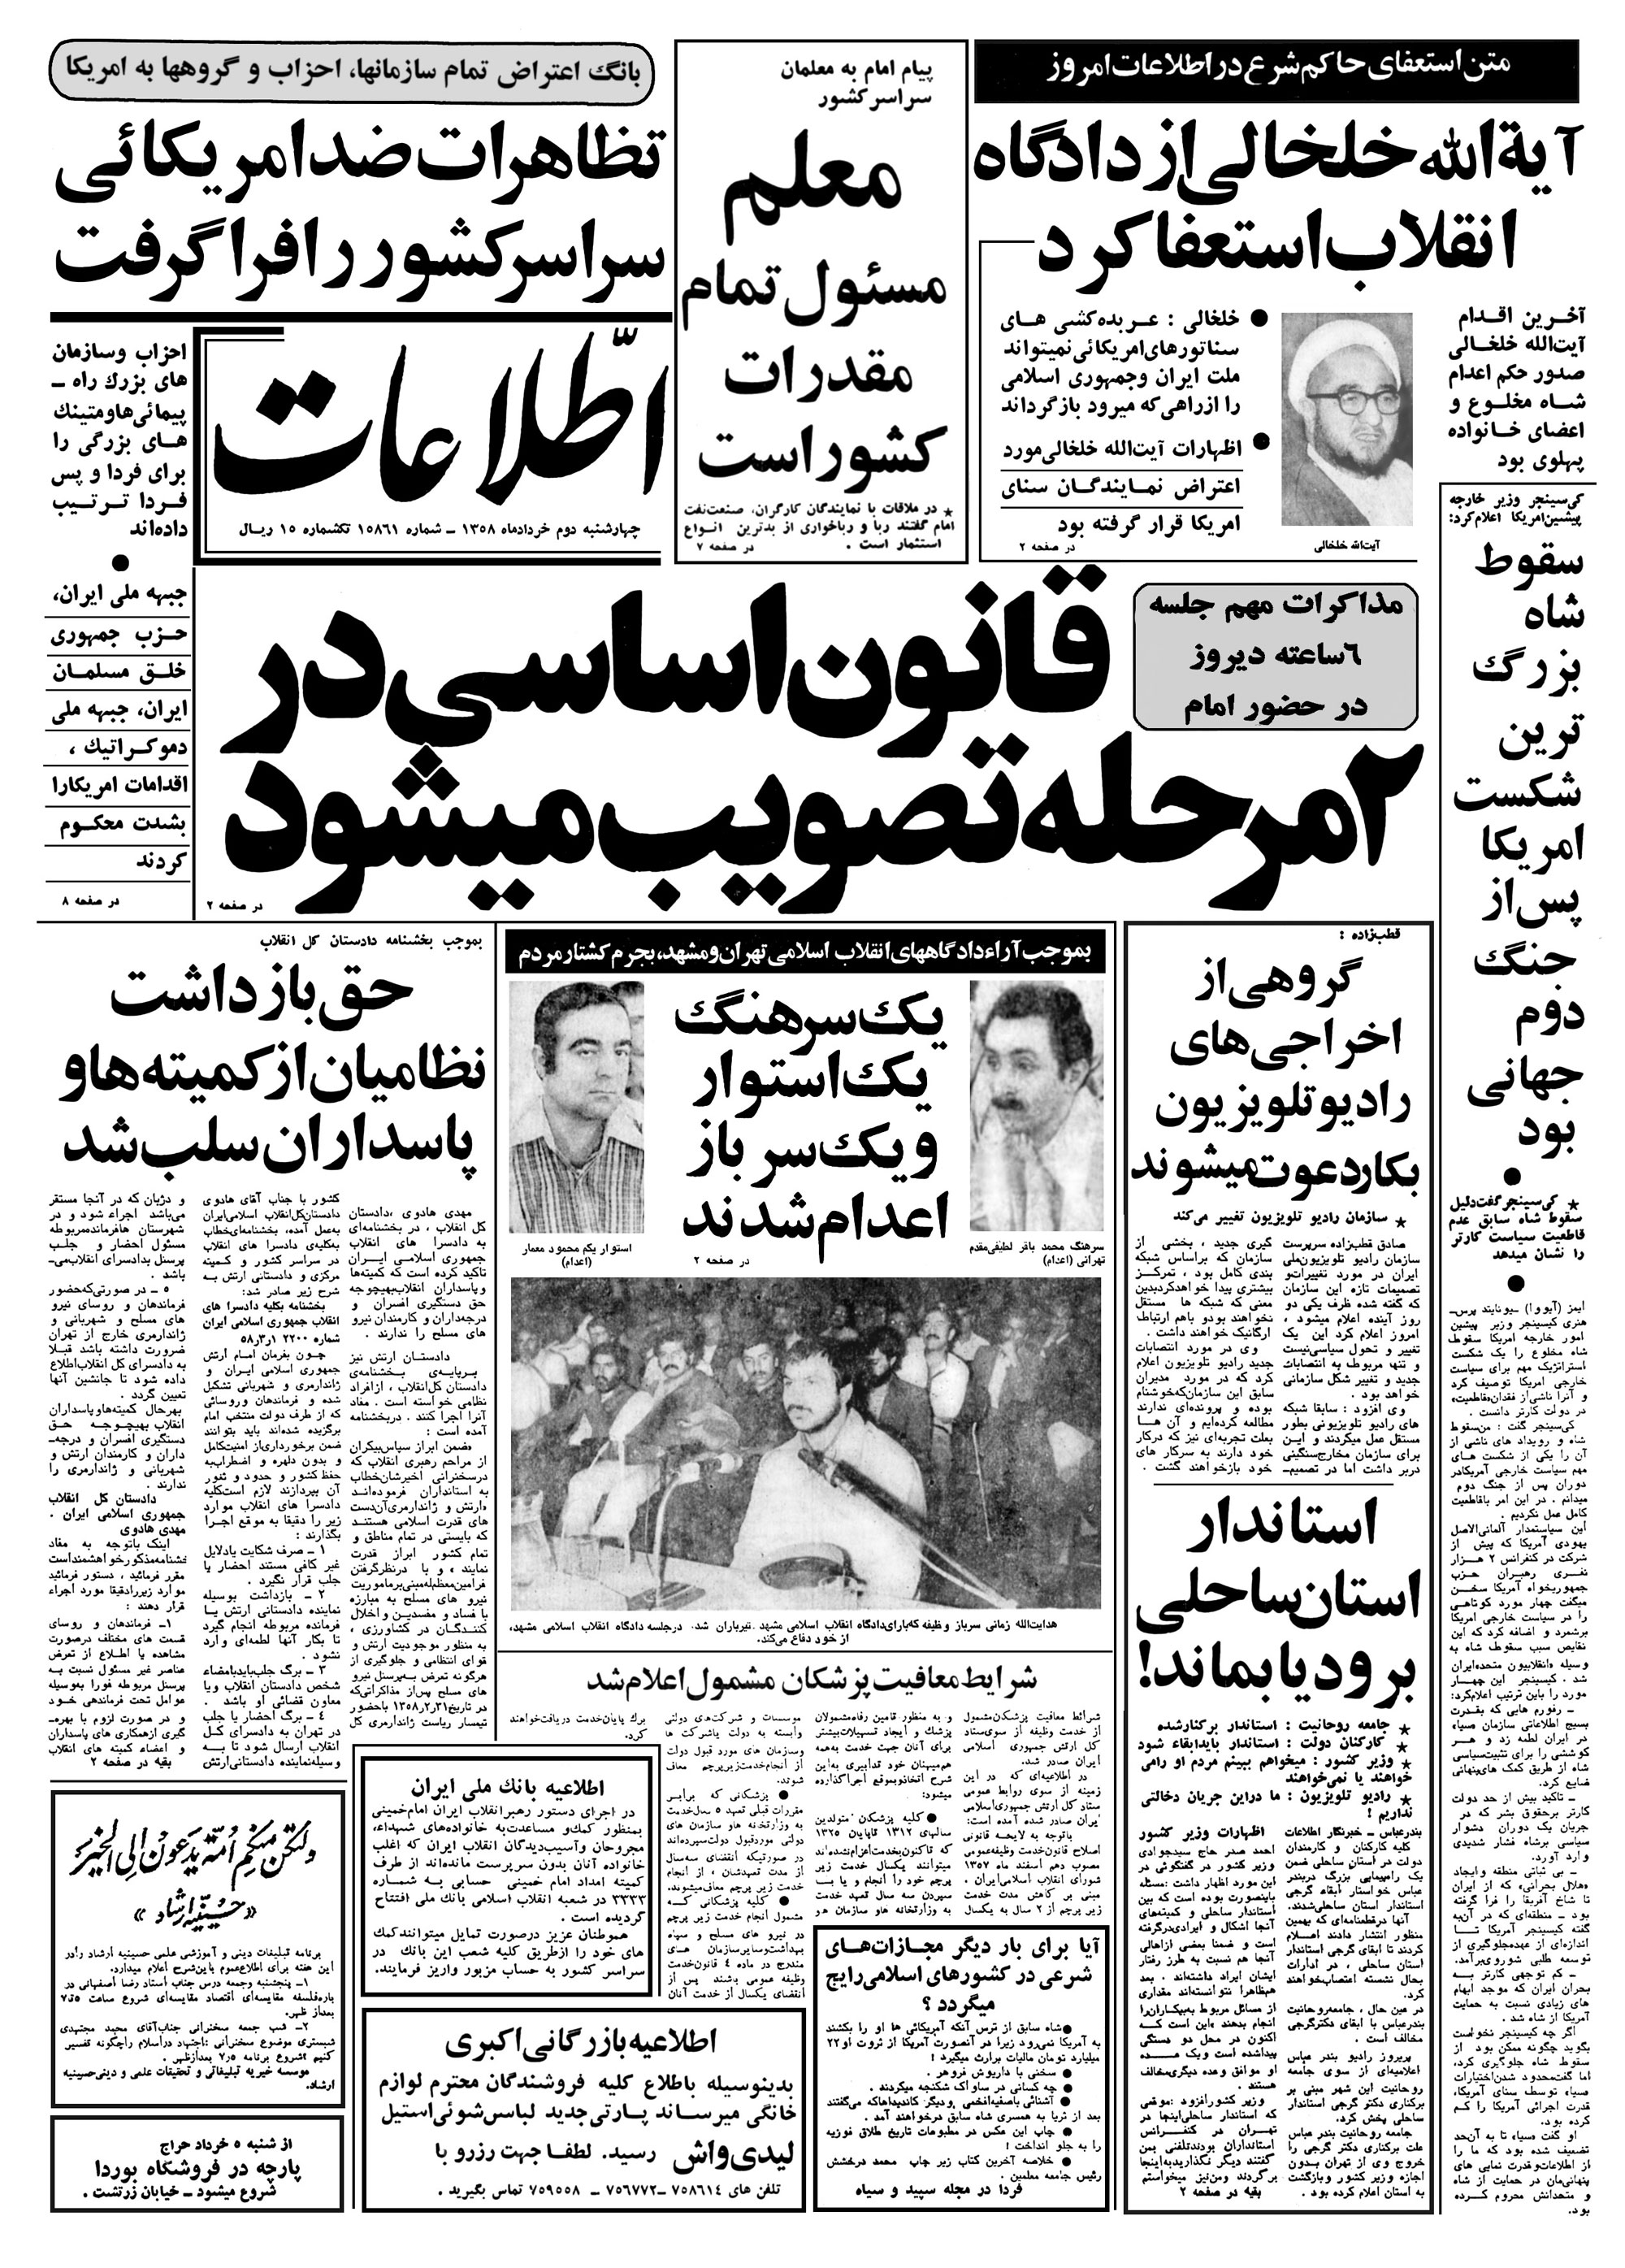 تصویر روزنامه اطلاعات دوم خرداد ۱۳۵۸